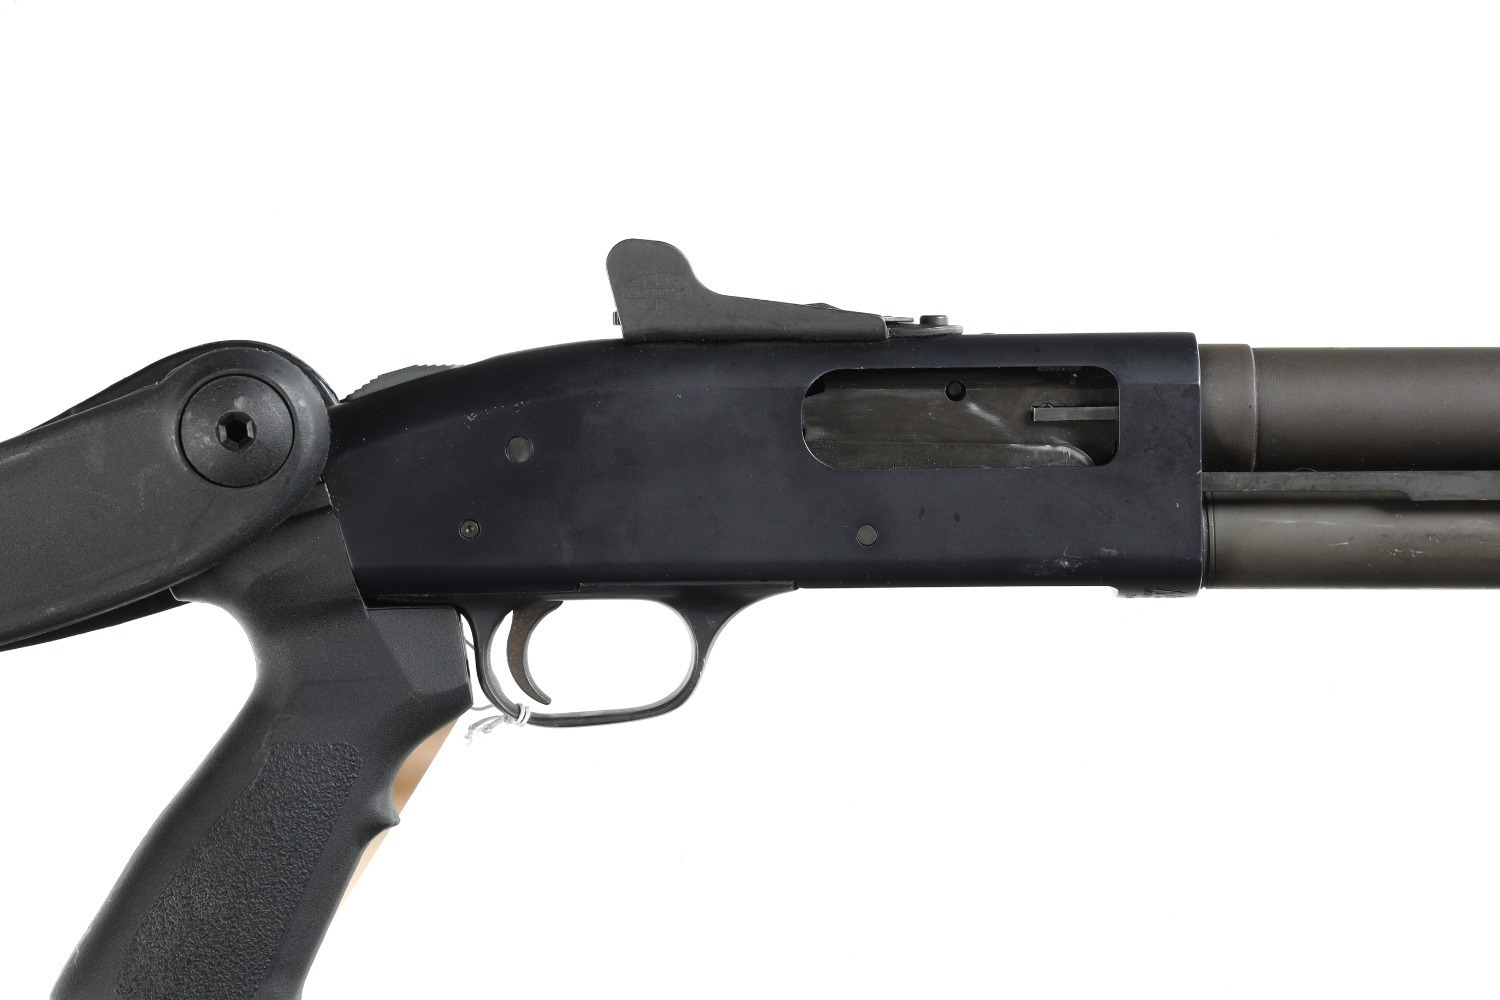 Mossberg M590A1 Slide Shotgun 12ga